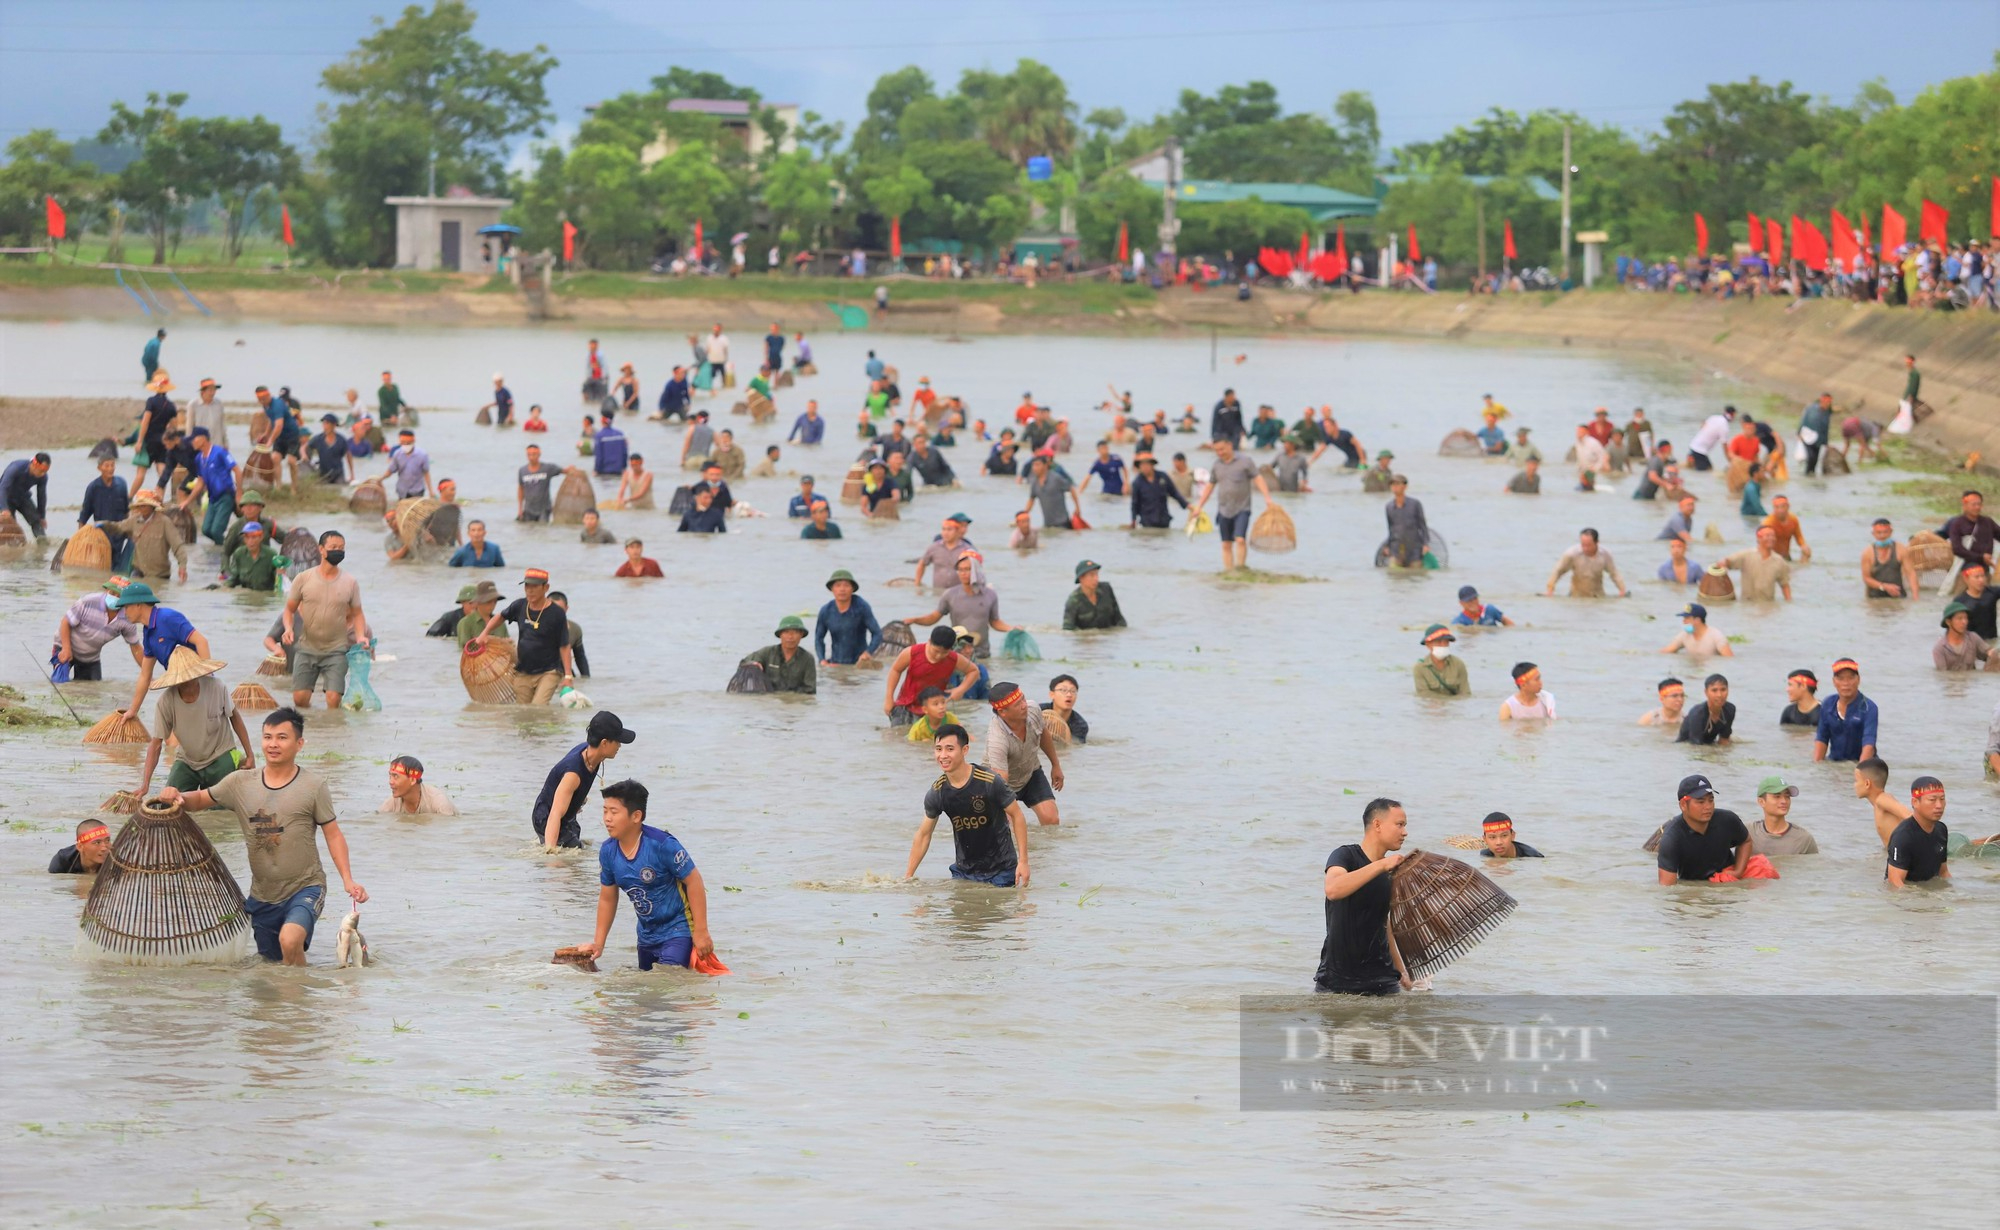 Hà Tĩnh: Hàng nghìn người dân reo hò, lội bùn tham gia Lễ hội bắt cá truyền thống xã Thạch Hưng - Ảnh 2.